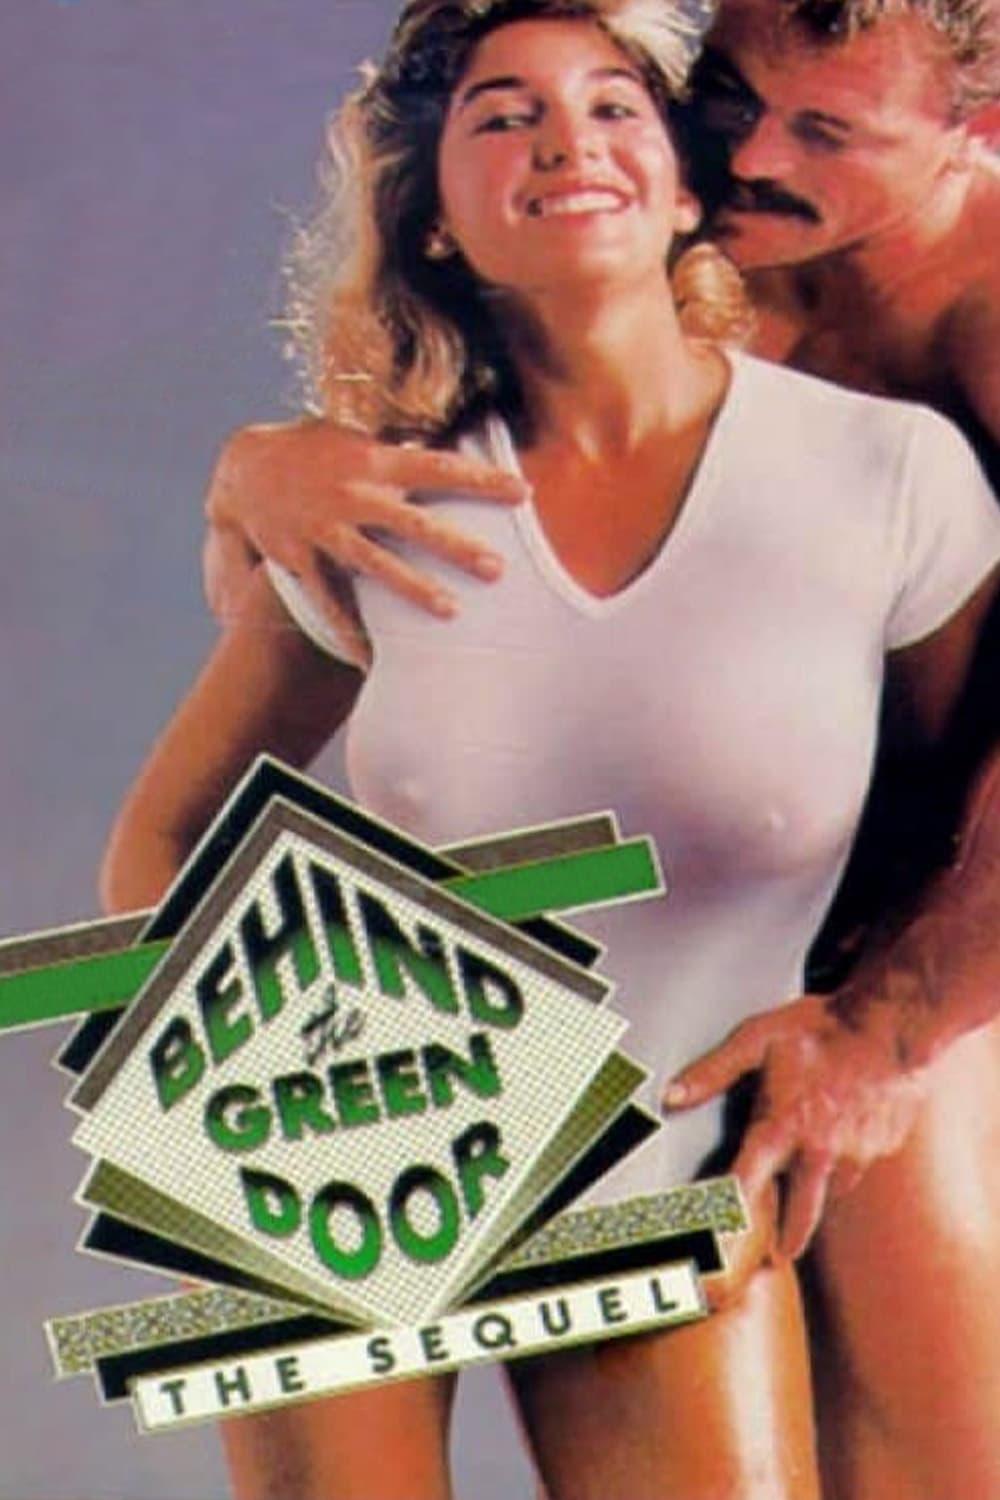 Behind the Green Door: The Sequel poster